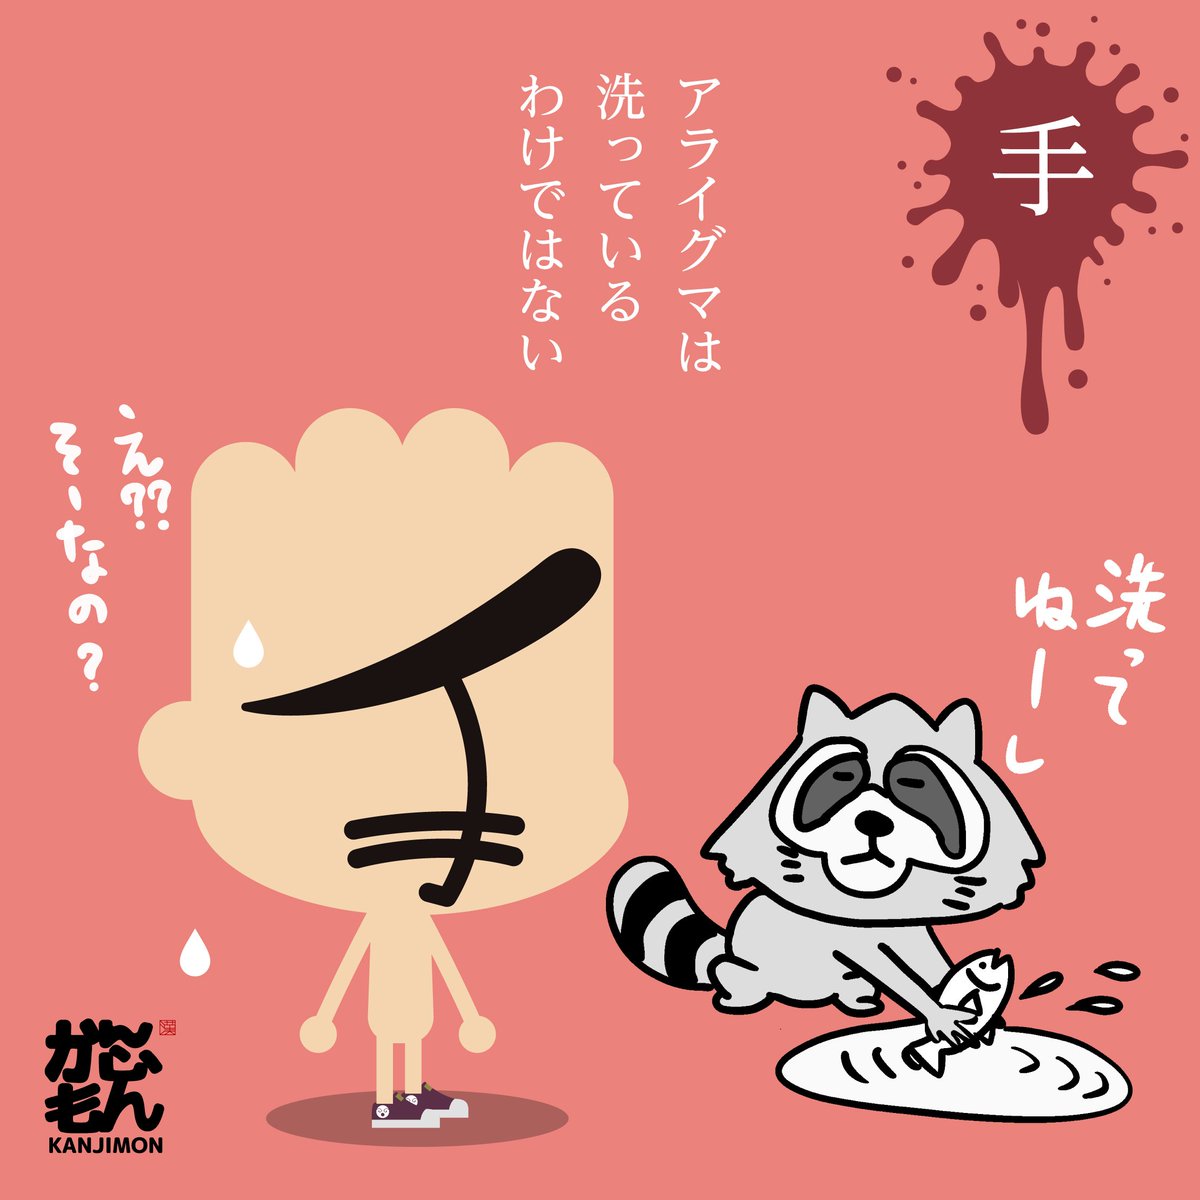 手洗い アライグマは物を洗っている訳ではなく 獲物を捕まえる仕草が洗ってい かんじもん Kanjimon の漫画